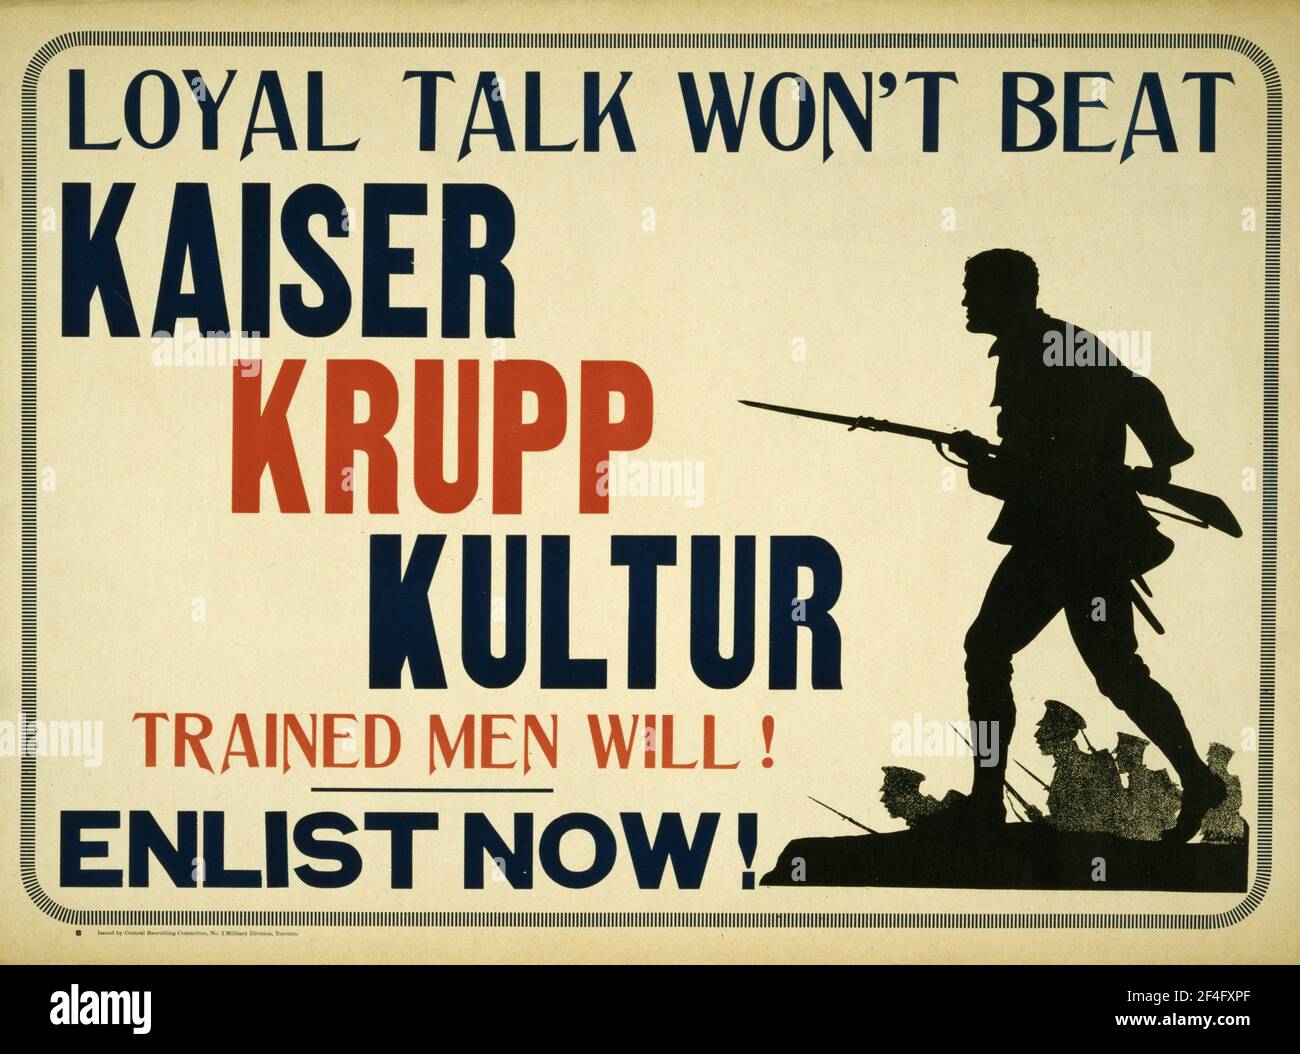 Un primer cartel de reclutamiento de la guerra mundial diciendo que la charla leal no va a vencer a Kaiser Krupp Kultur, hombres entrenados lo hará Foto de stock